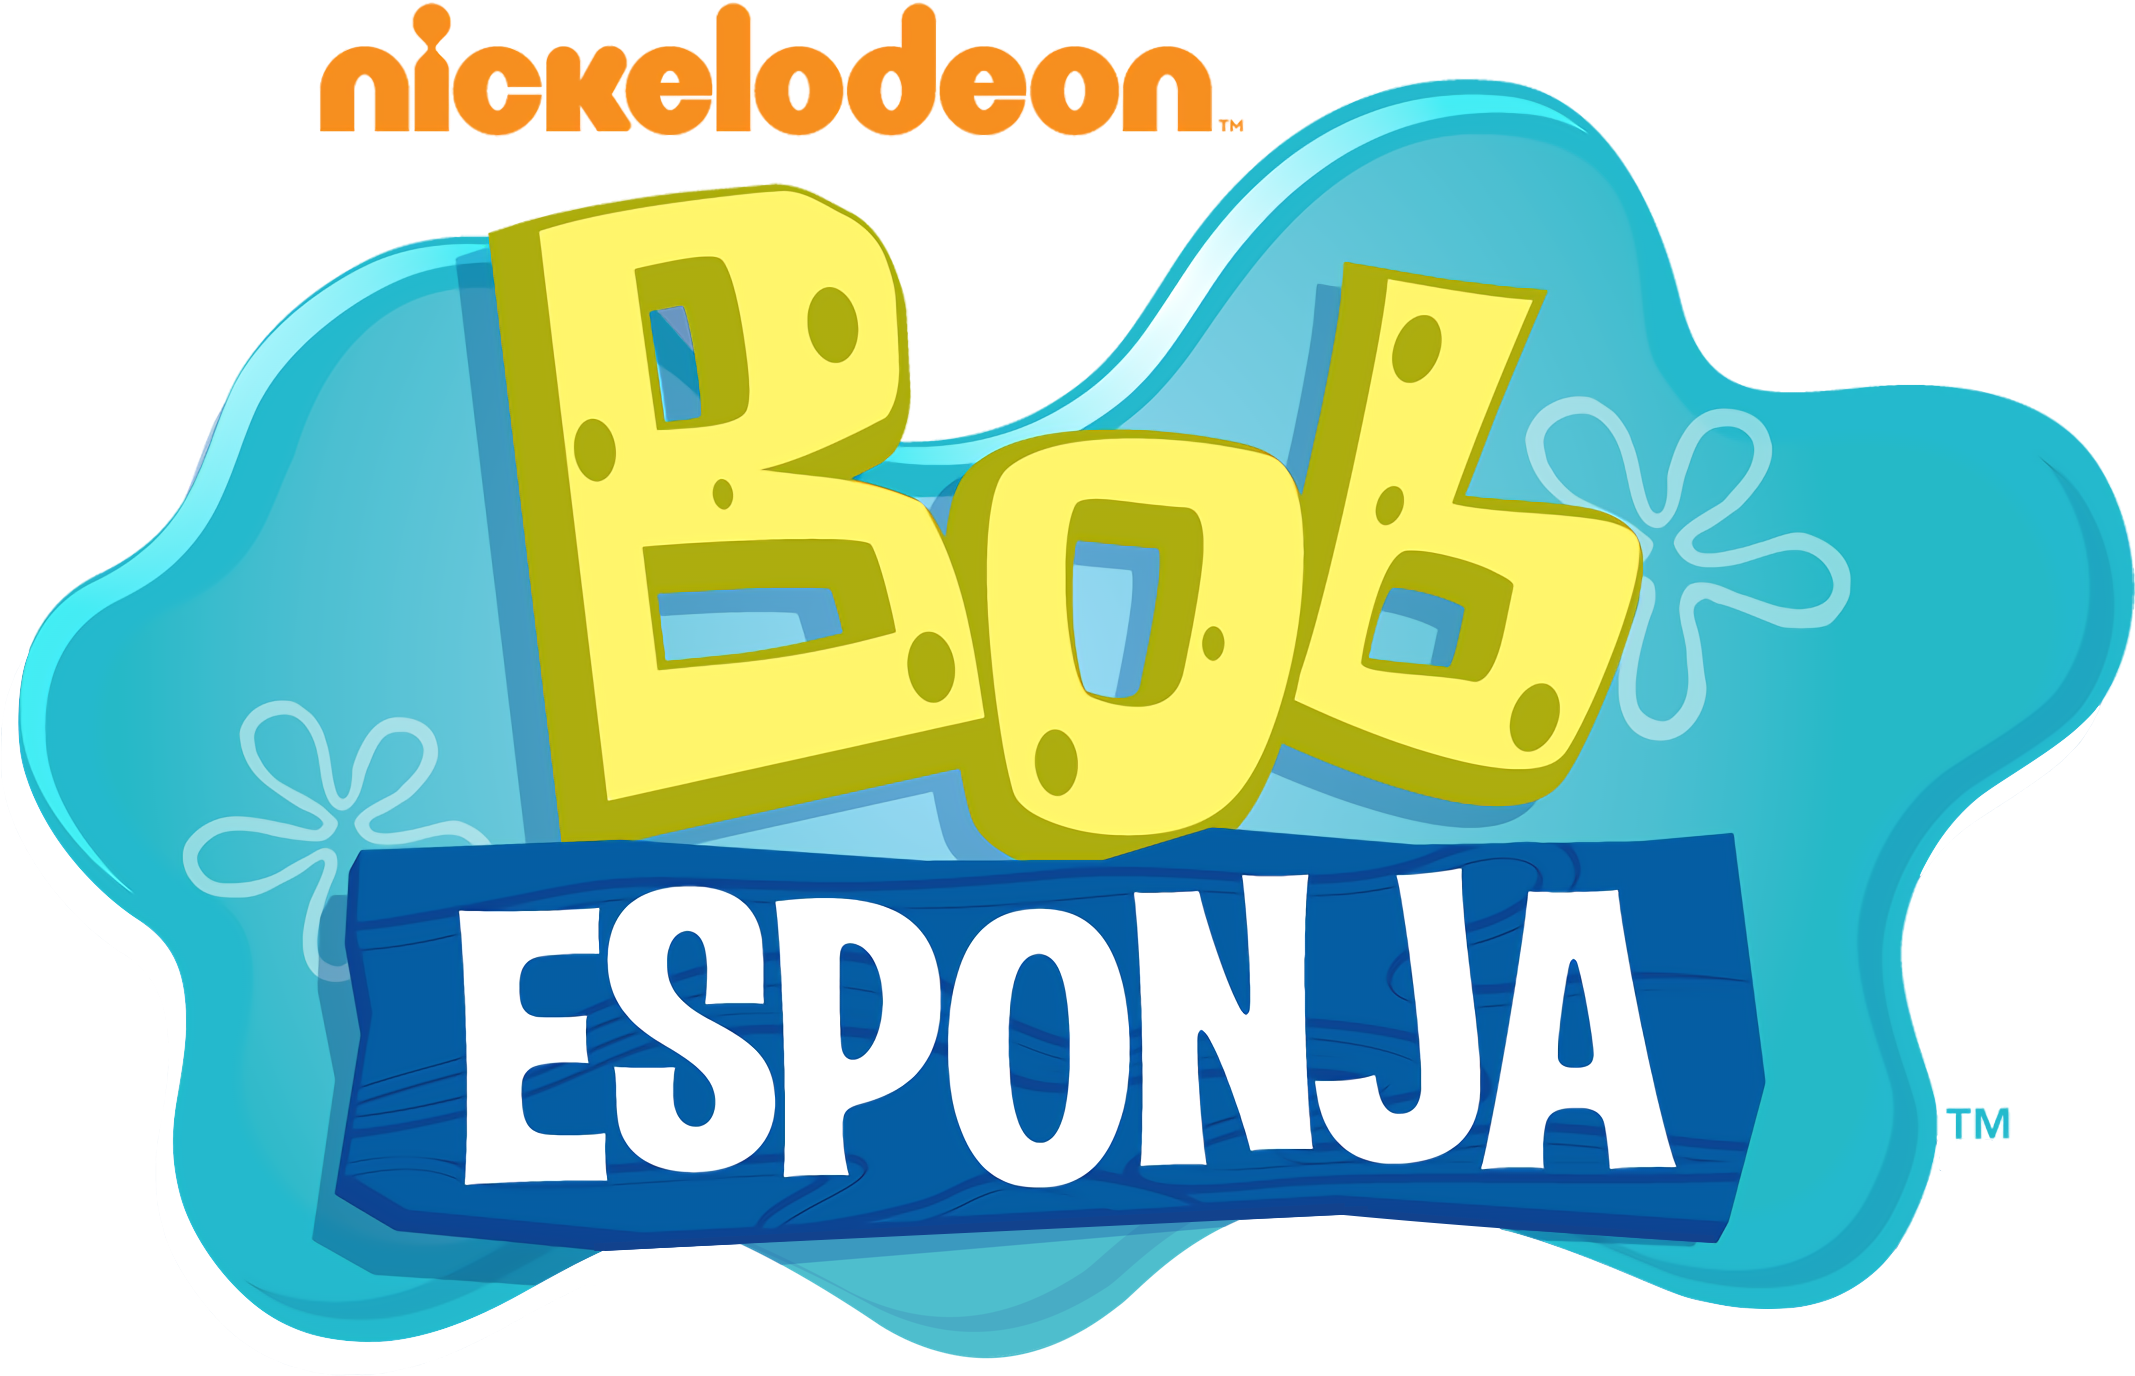 Second Logo - Bob Esponja Logo Png (2328x1482), Png Download